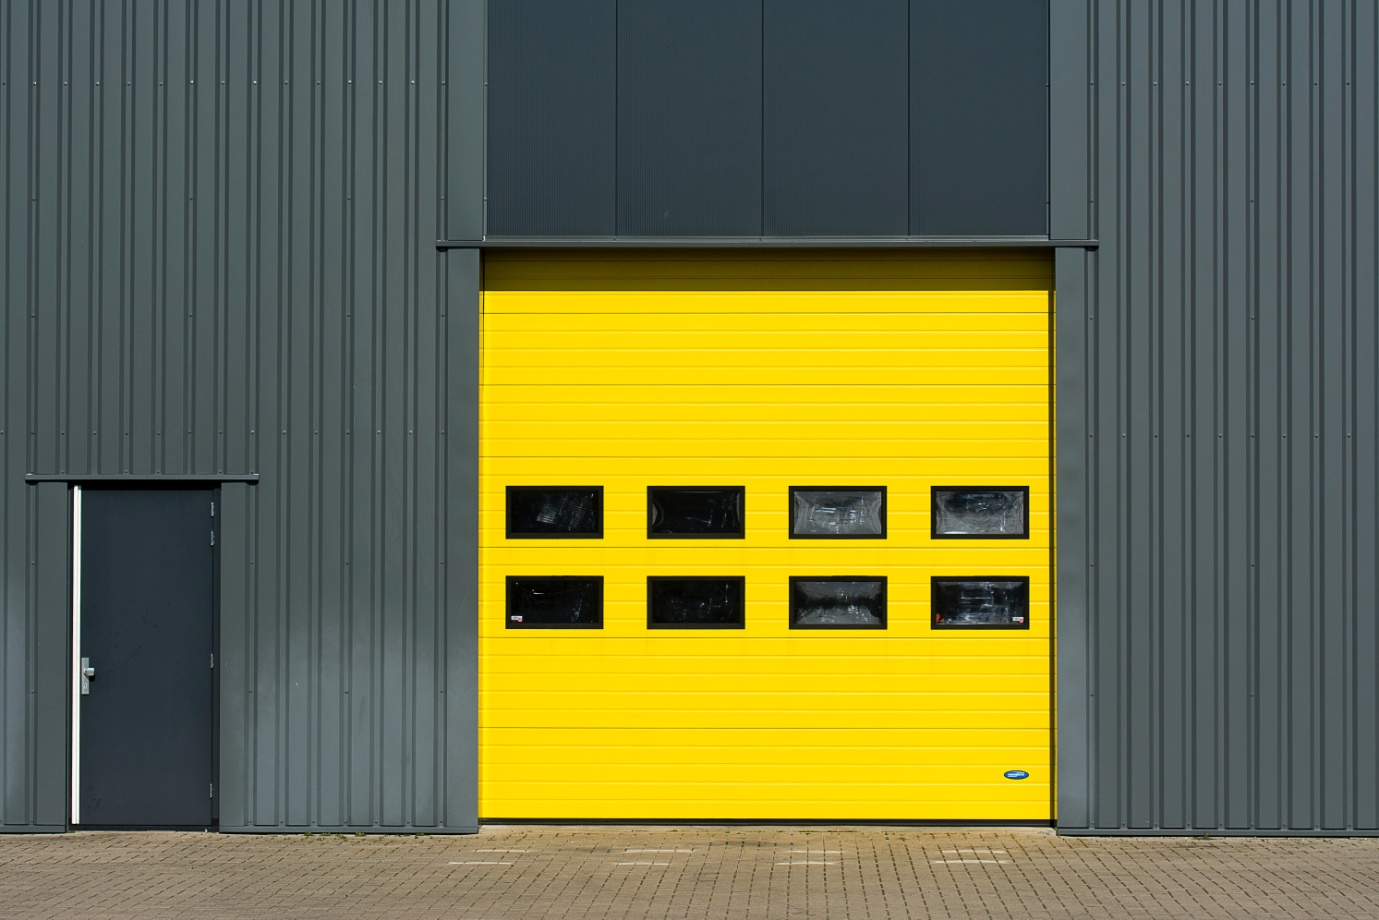 A garage door